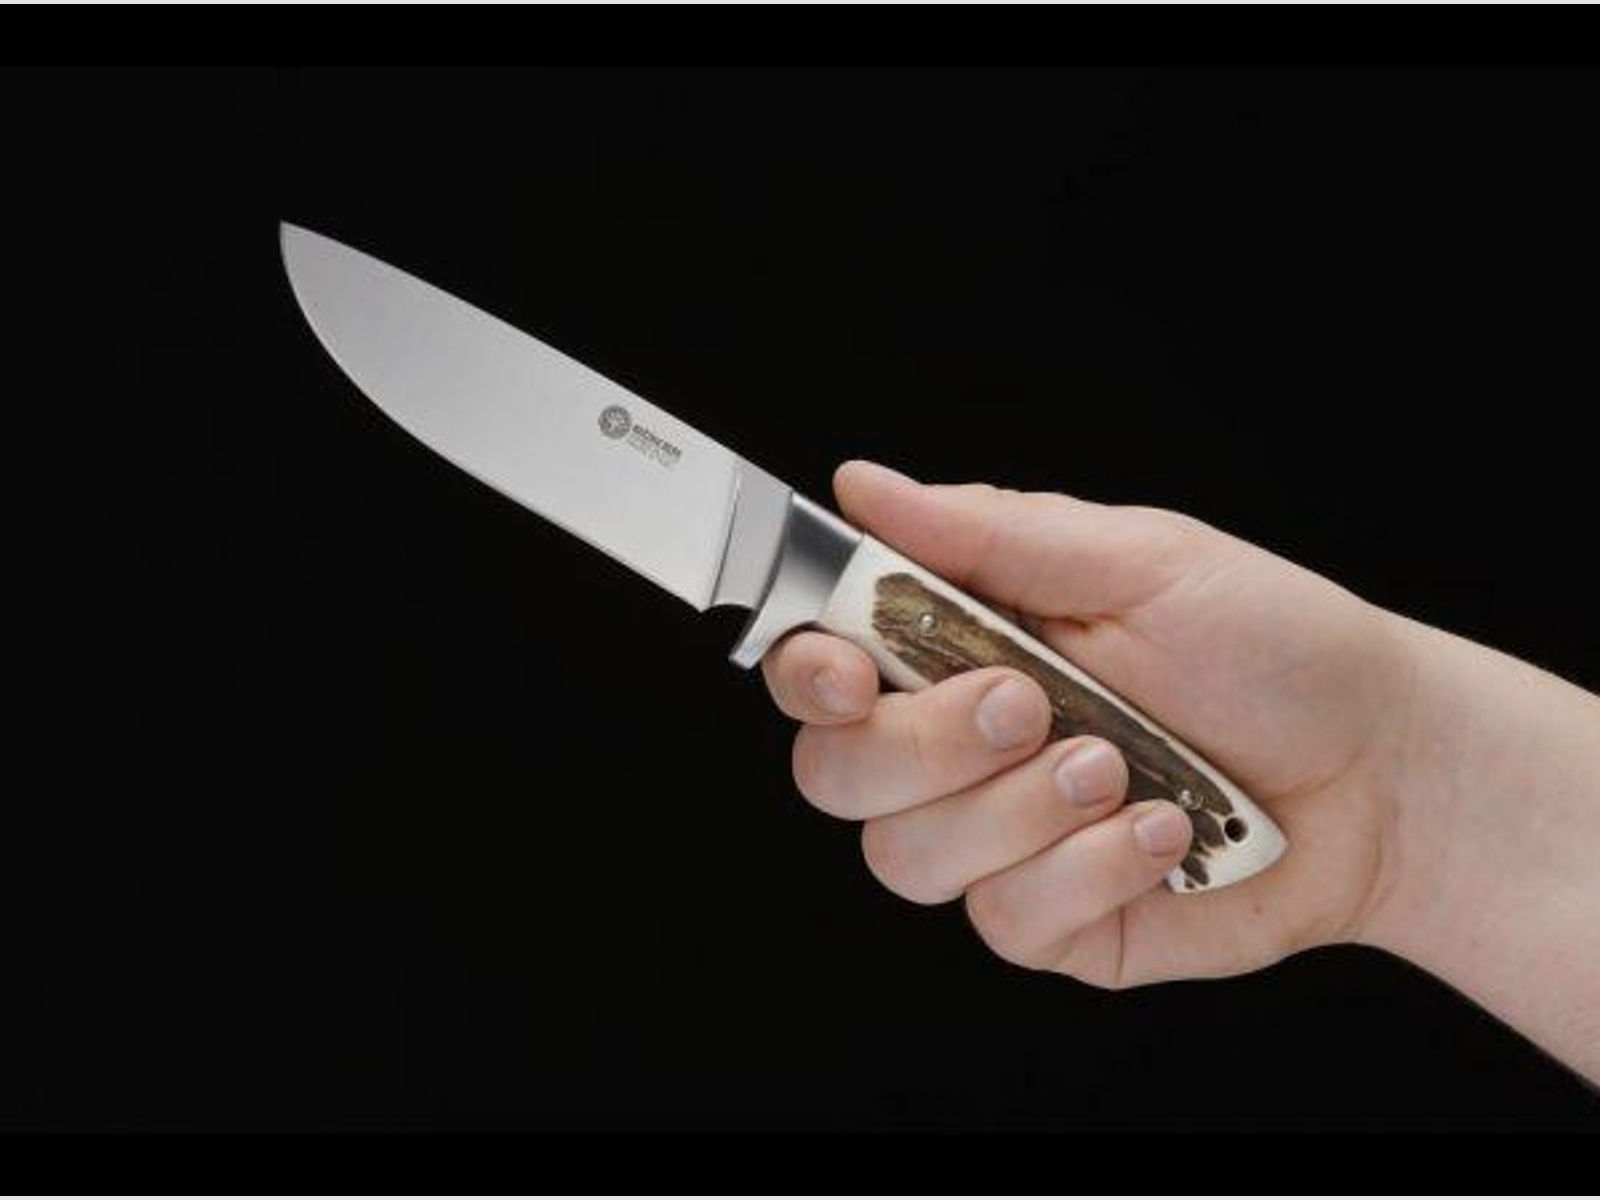 BÖKER Feststehendes Messer Arbolito Hunter 12cm   HH